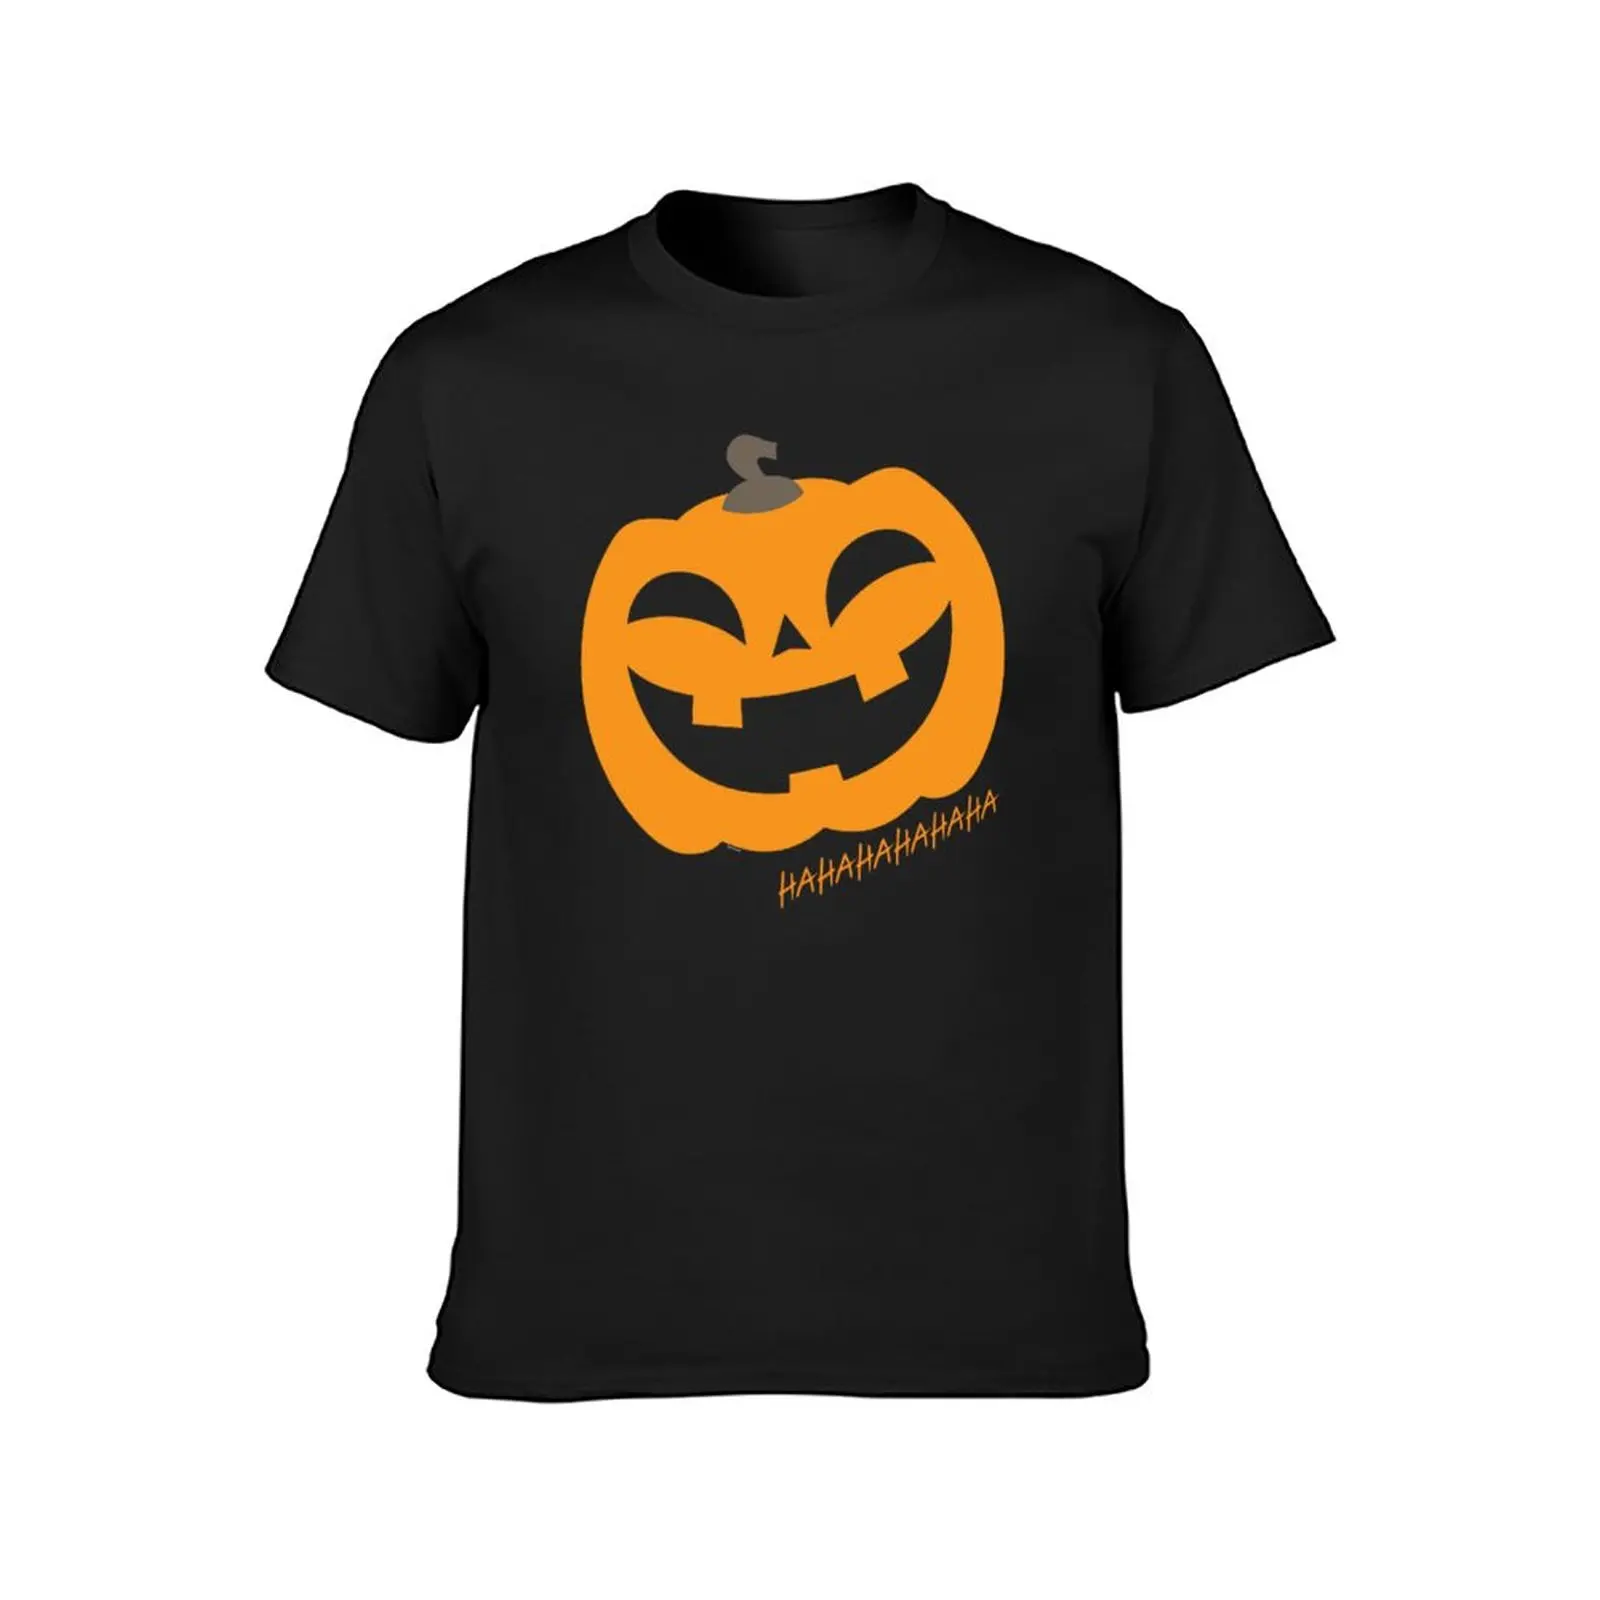 

Модная мужская футболка с изображением милой тыквы Джека о-фонаря, смеющейся, потрясающая футболка на Хэллоуин, футболка с круглым вырезом ...